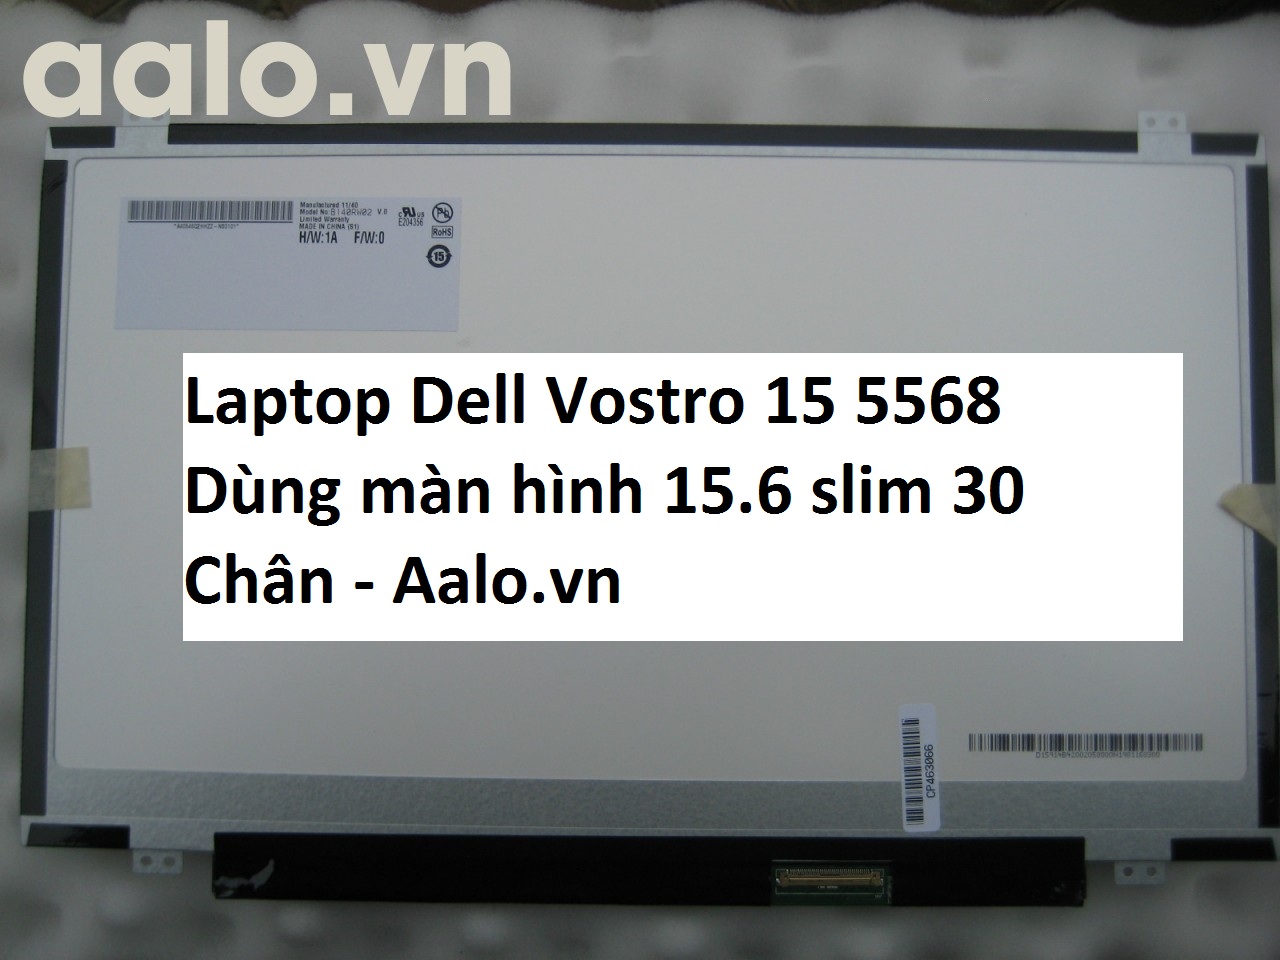 Màn hình Laptop Dell Vostro 15 5568 - Aalo.vn